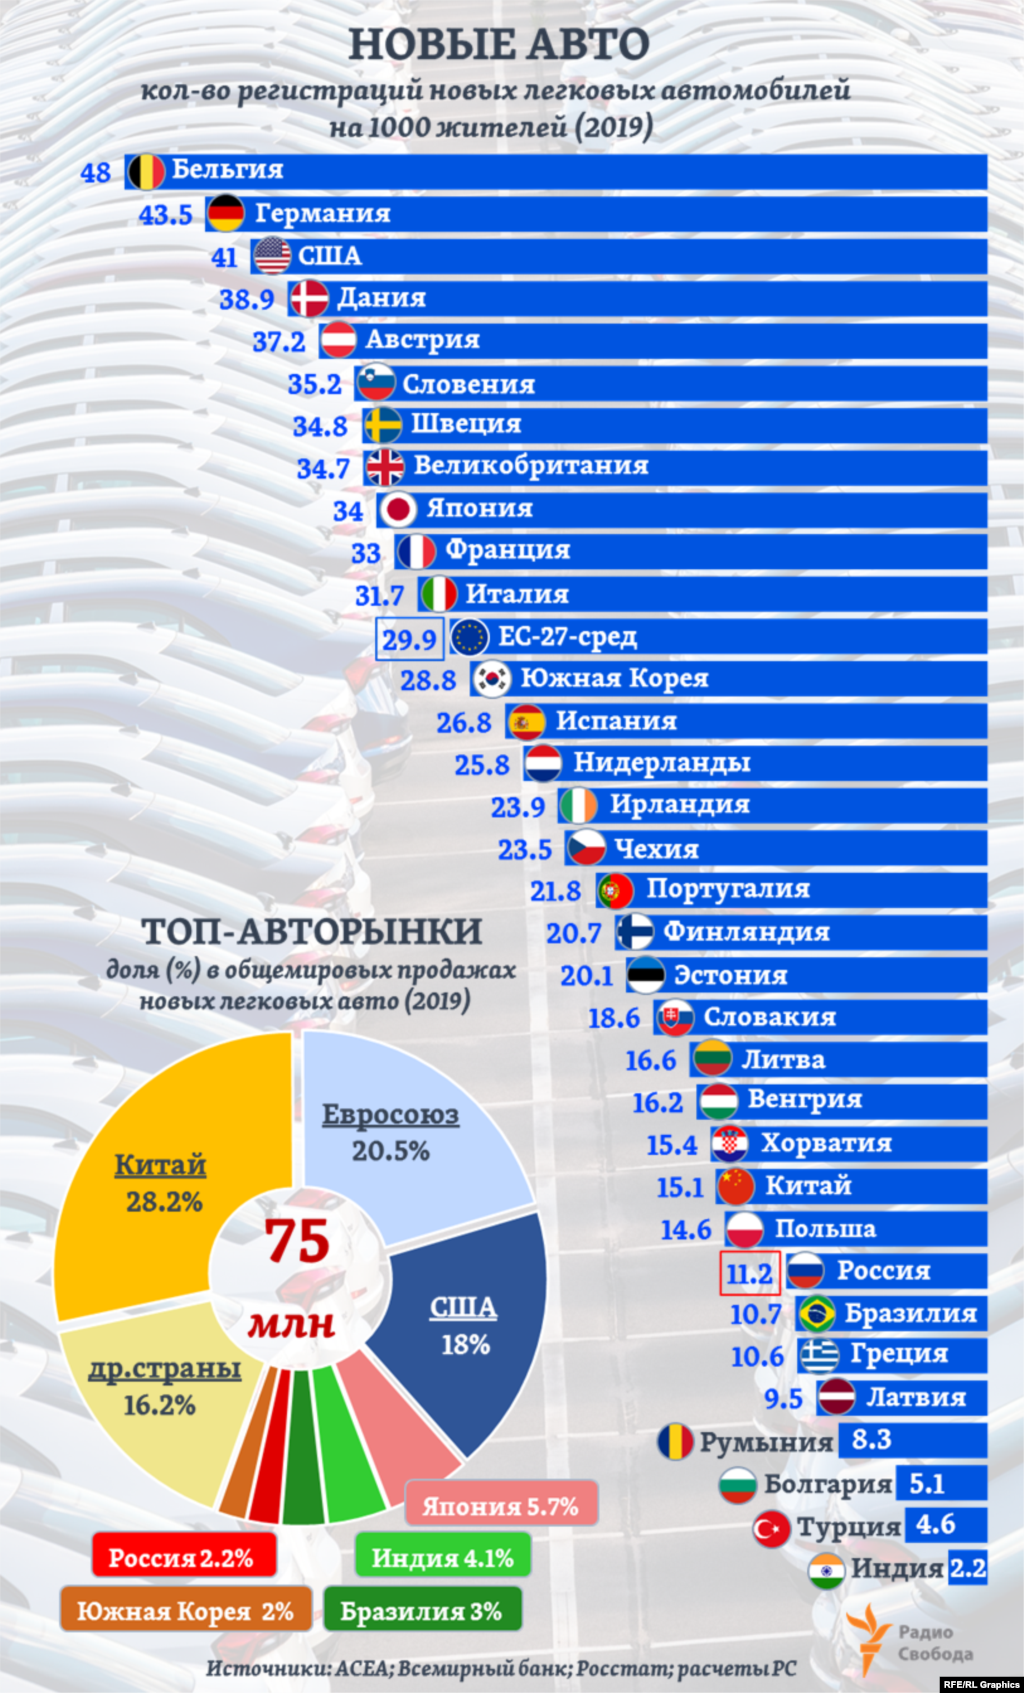 В 2019 году в мире было зарегистрировано в целом&nbsp;74,946 млн купленных населением новых легковых пассажирских автомобилей. 67% этих продаж пришлось на Китай, ЕС и США. При этом в Европе, по данным АСЕА, самый высокий относительный уровень регистраций новых легковых автомобилей - в Люксембурге (90 новых авто на 1000 жителей). Это почти вдвое больше, чем у ближайших по этому показателю стран ЕС. Для его расчета по другим странам на графике мы сопоставили оценки АСЕА по количеству регистраций новых автомобилей с данными Всемирного банка по средней численности населения в 2019 году (для России &ndash; данные Росстата). &nbsp;&nbsp;